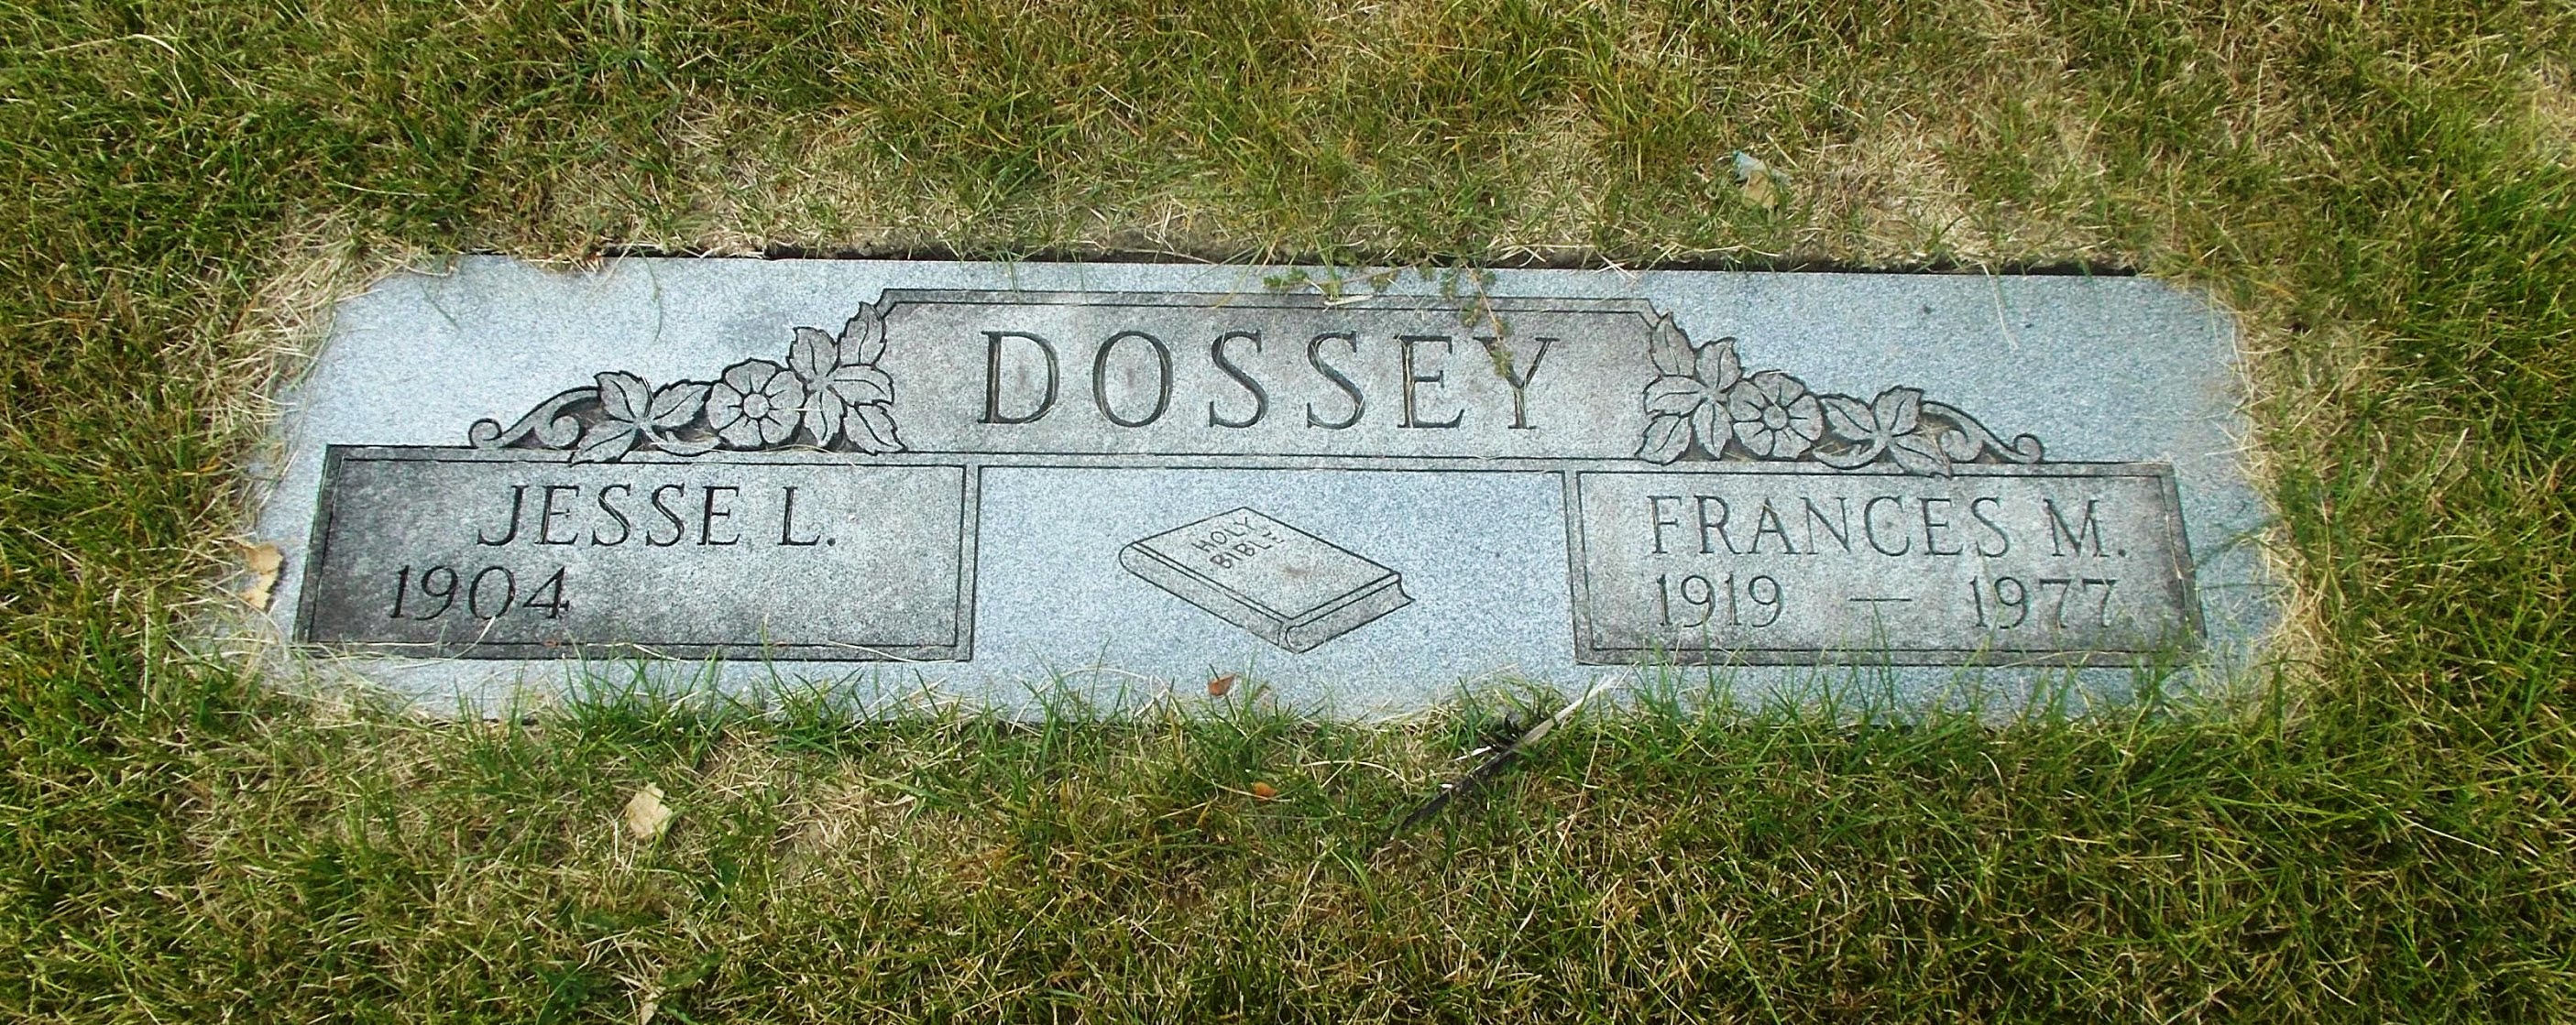 Frances M Dossey